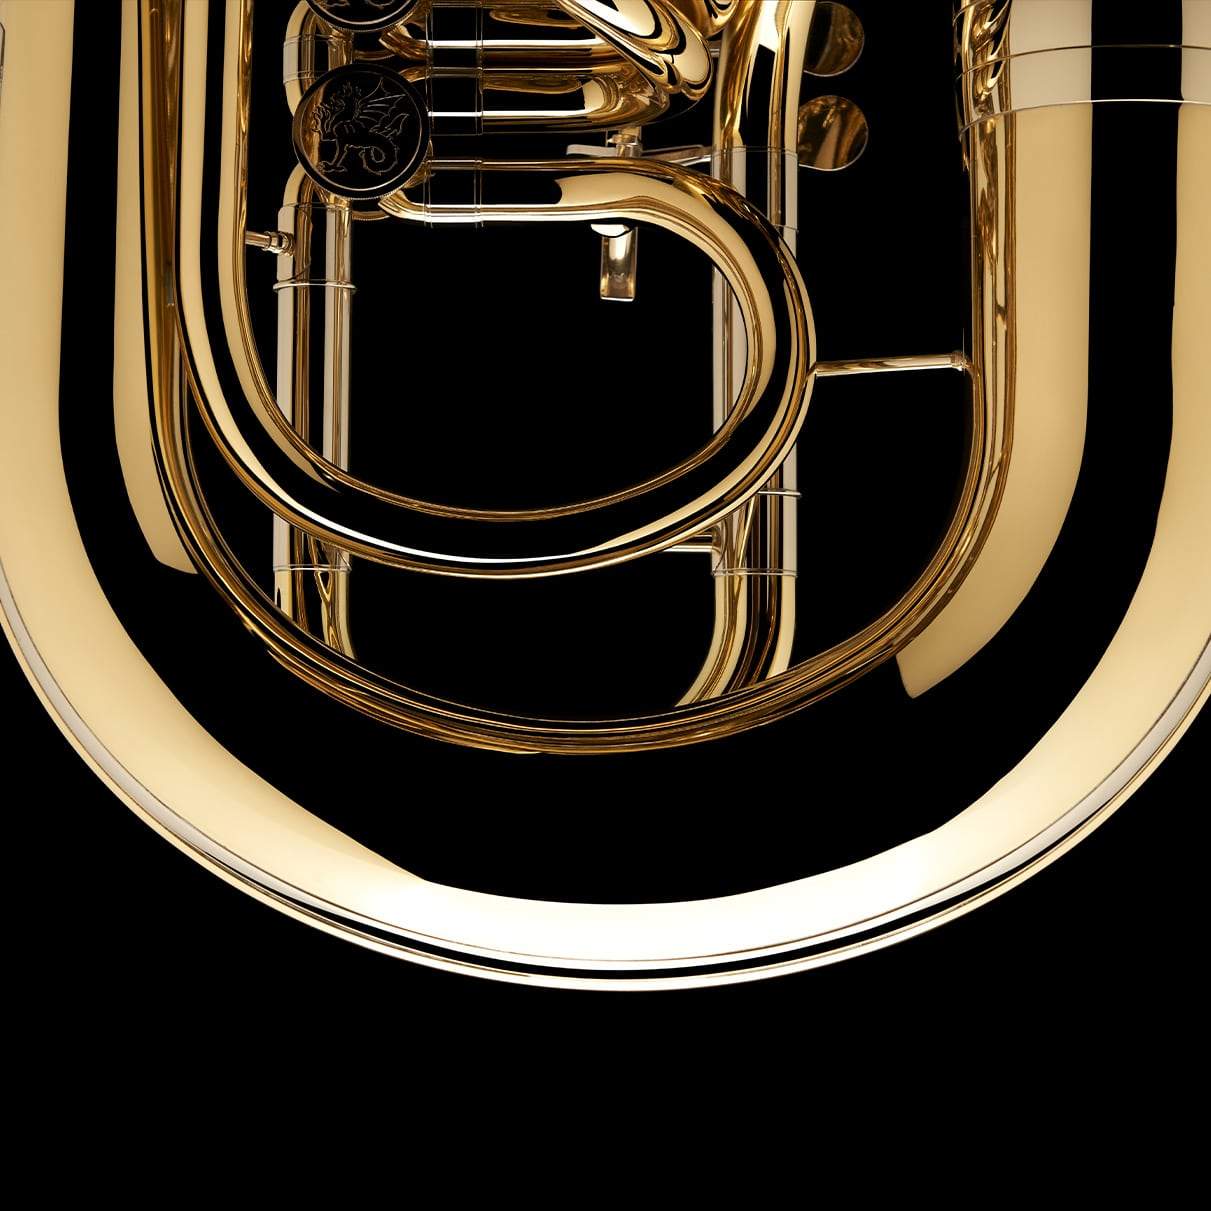 Tuba en Fa 'Berg' – TF435 P